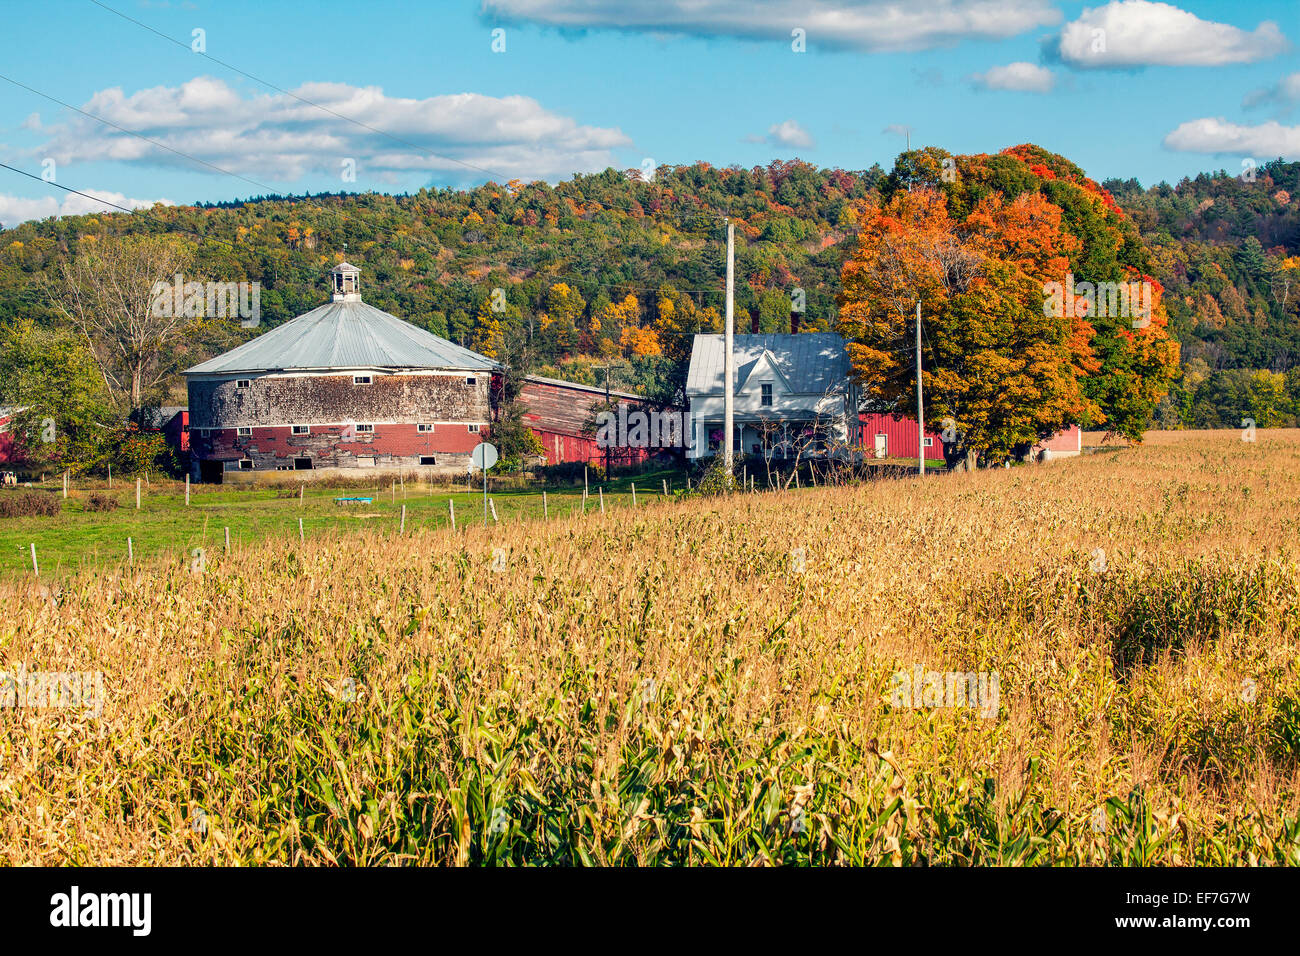 Ronde, vintage étable laitière, house et les champs de maïs dans le nord du Vermont, États-Unis d'Amérique. Saison est l'automne. Banque D'Images